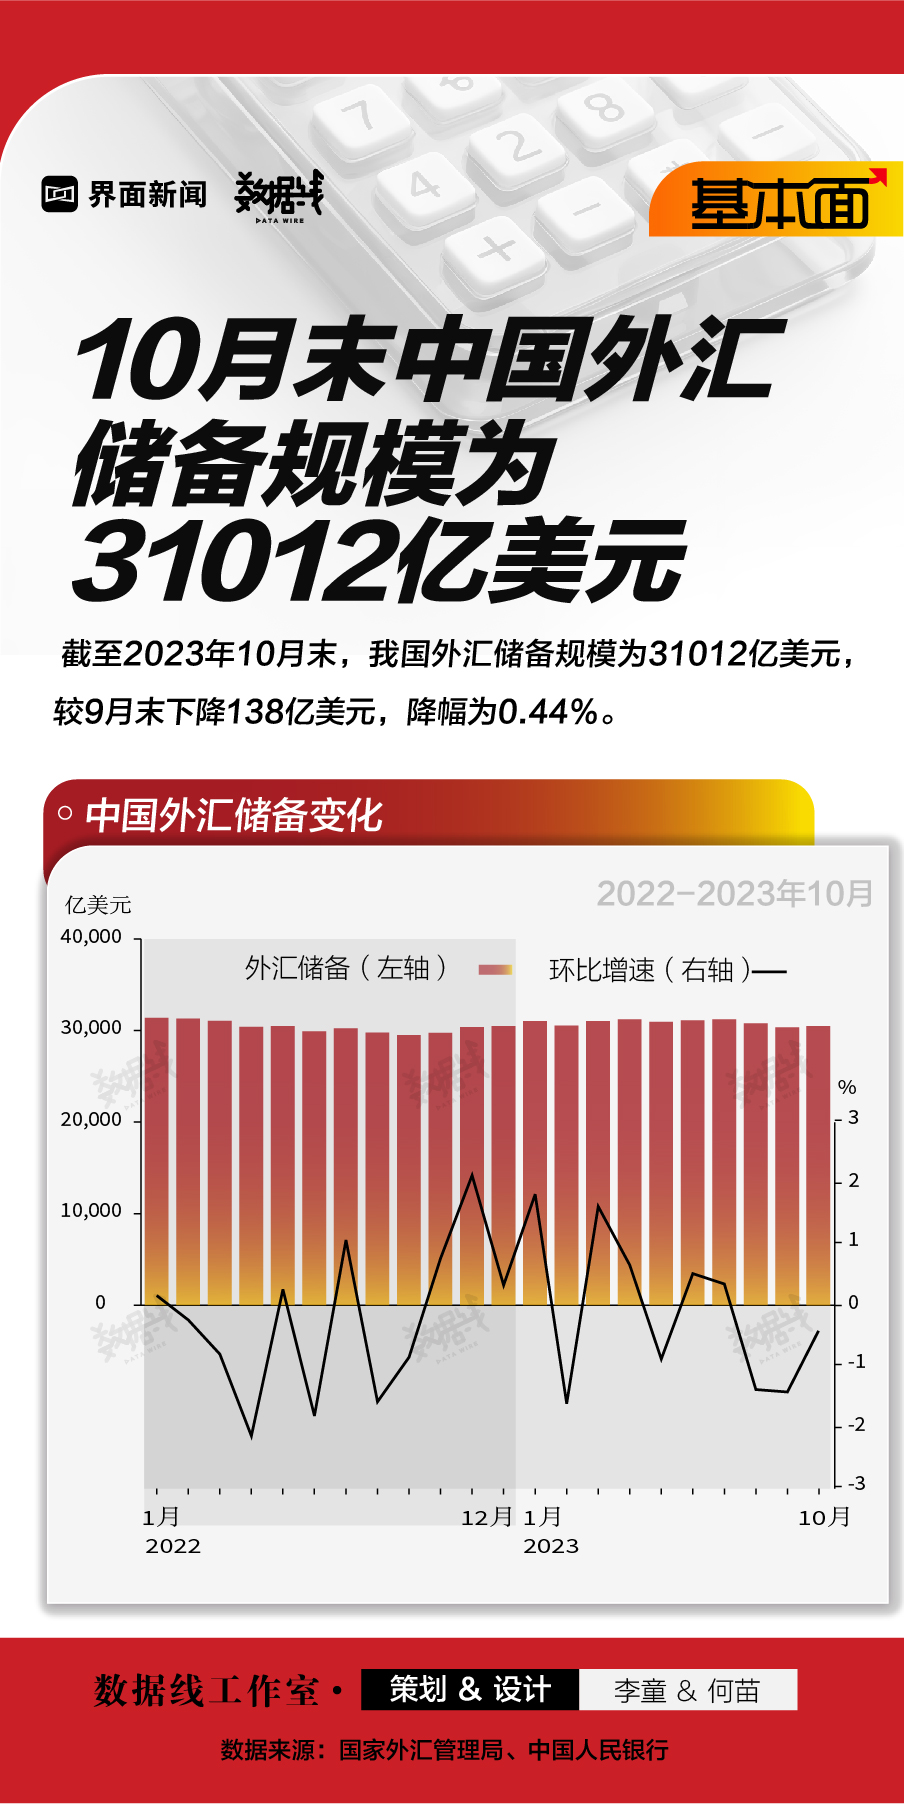 基本面 | 10月末中国外汇储备规模为31012亿美元